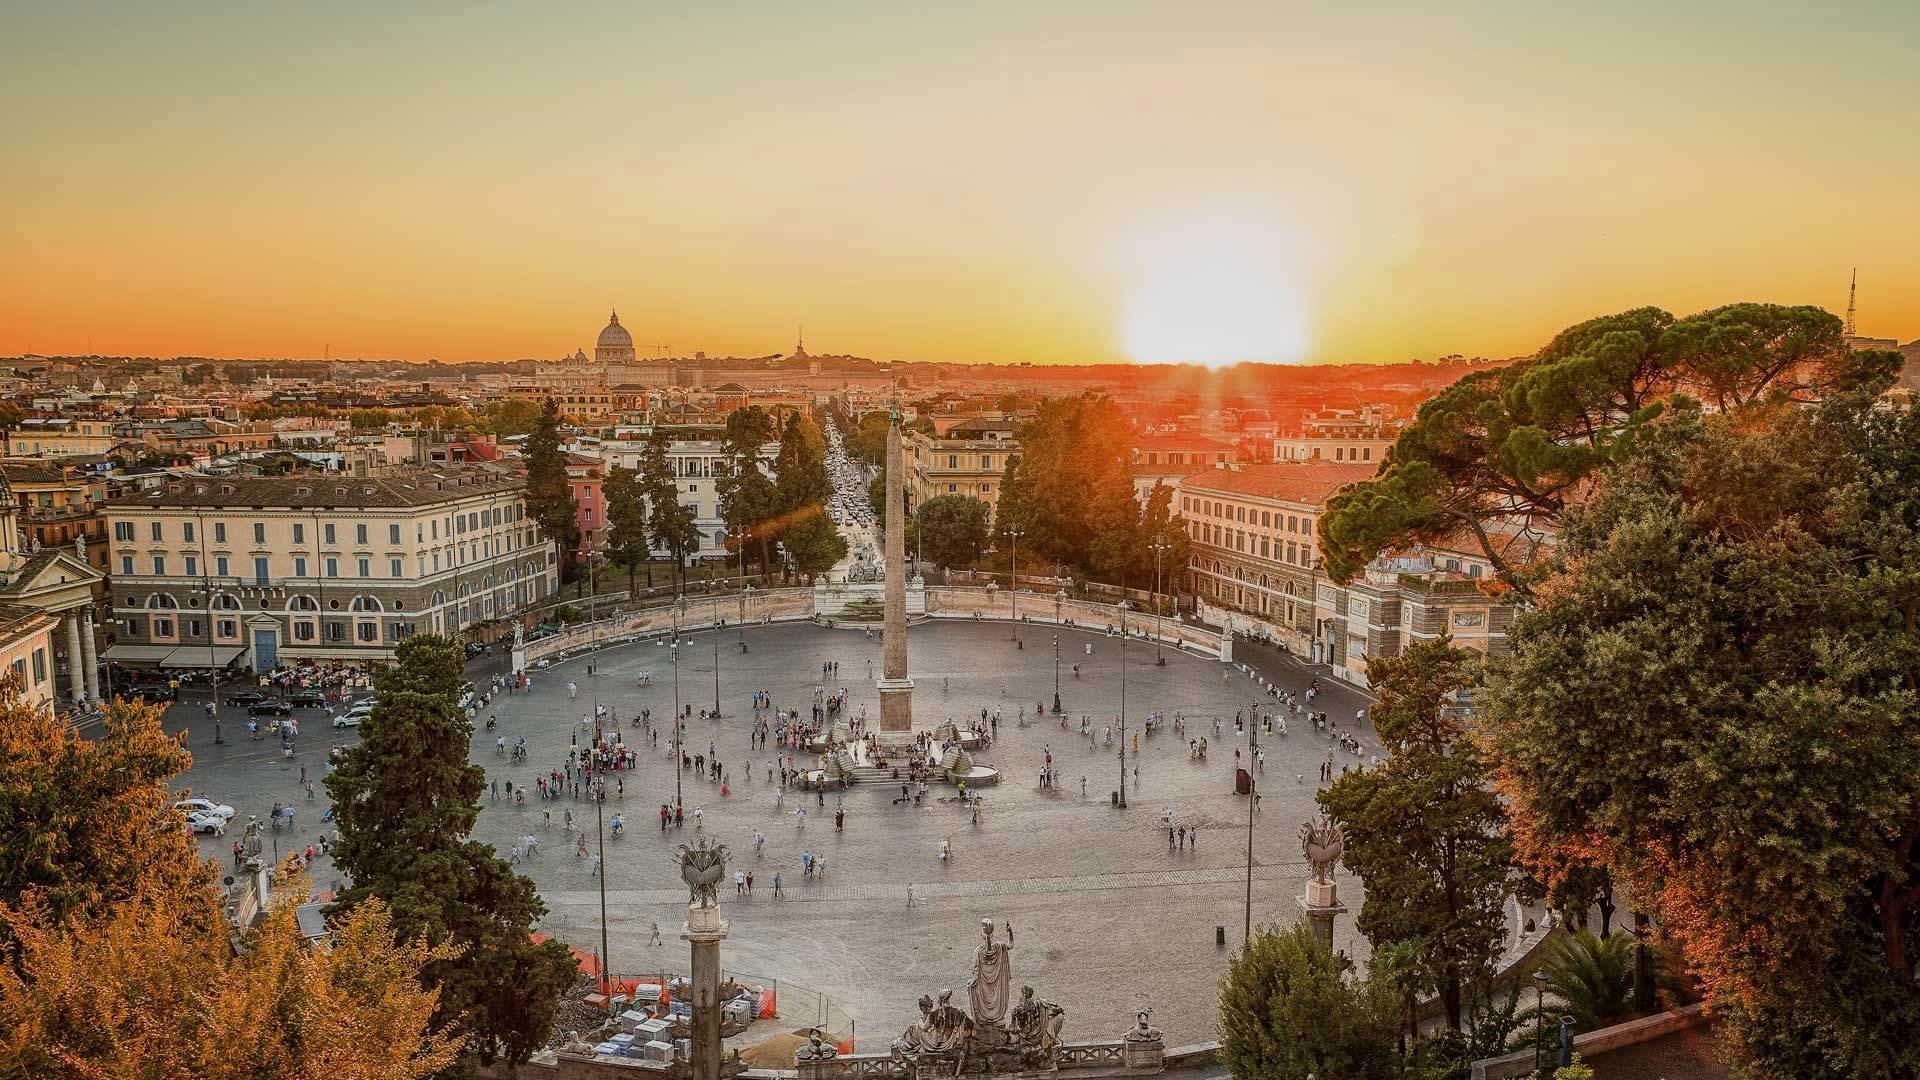 Rome: Piazza del Popolo, A large urban square. 1920x1080 Full HD Background.